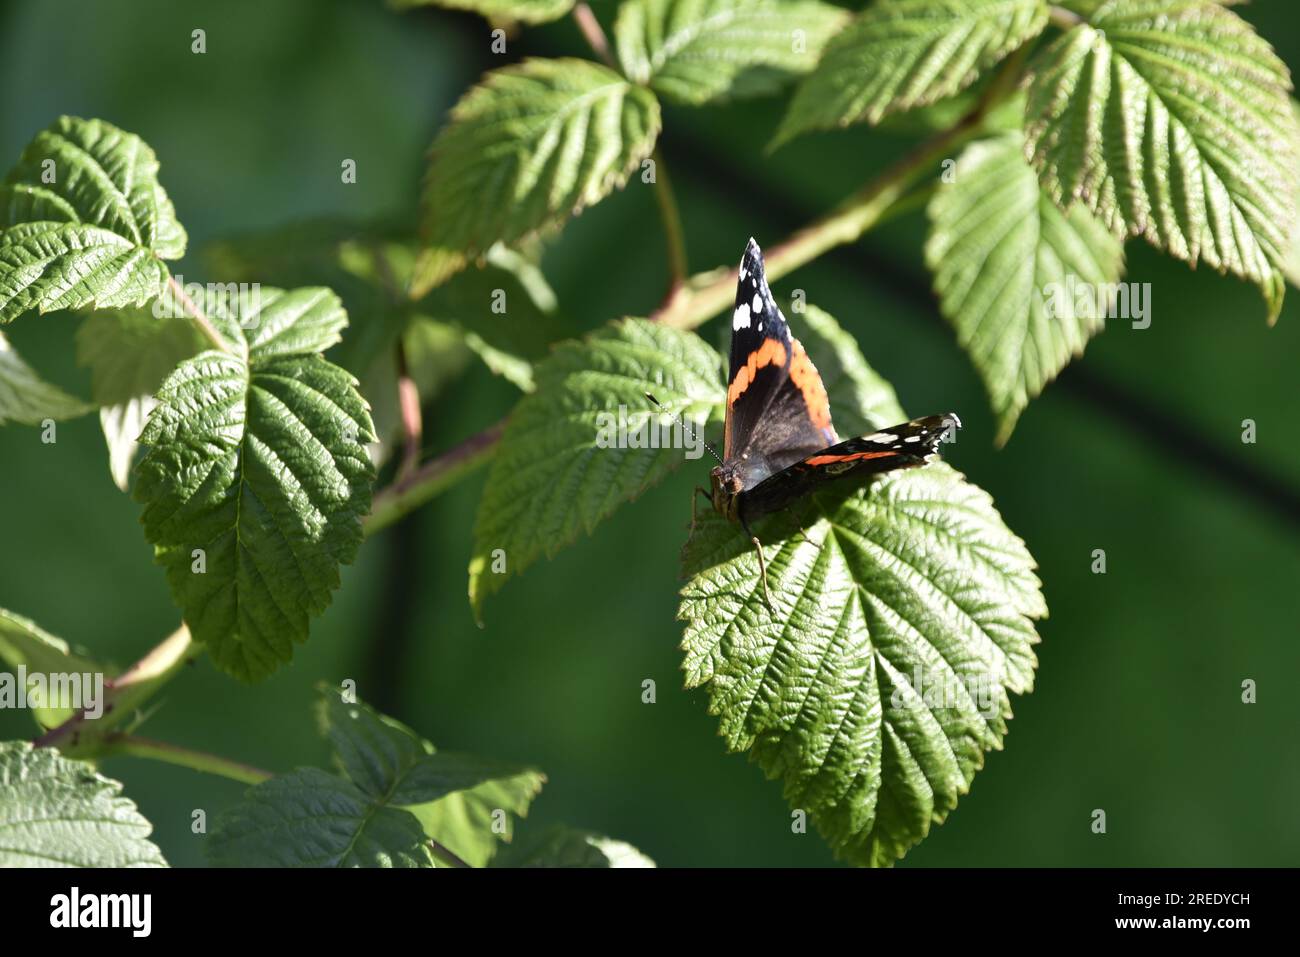 Immagine ravvicinata di una Red Admiral Butterfly (Vanessa atalanta) rivolta verso una fotocamera da una soleggiata foglia di lampone, con le ali aperte, a destra dell'immagine, nel Regno Unito Foto Stock